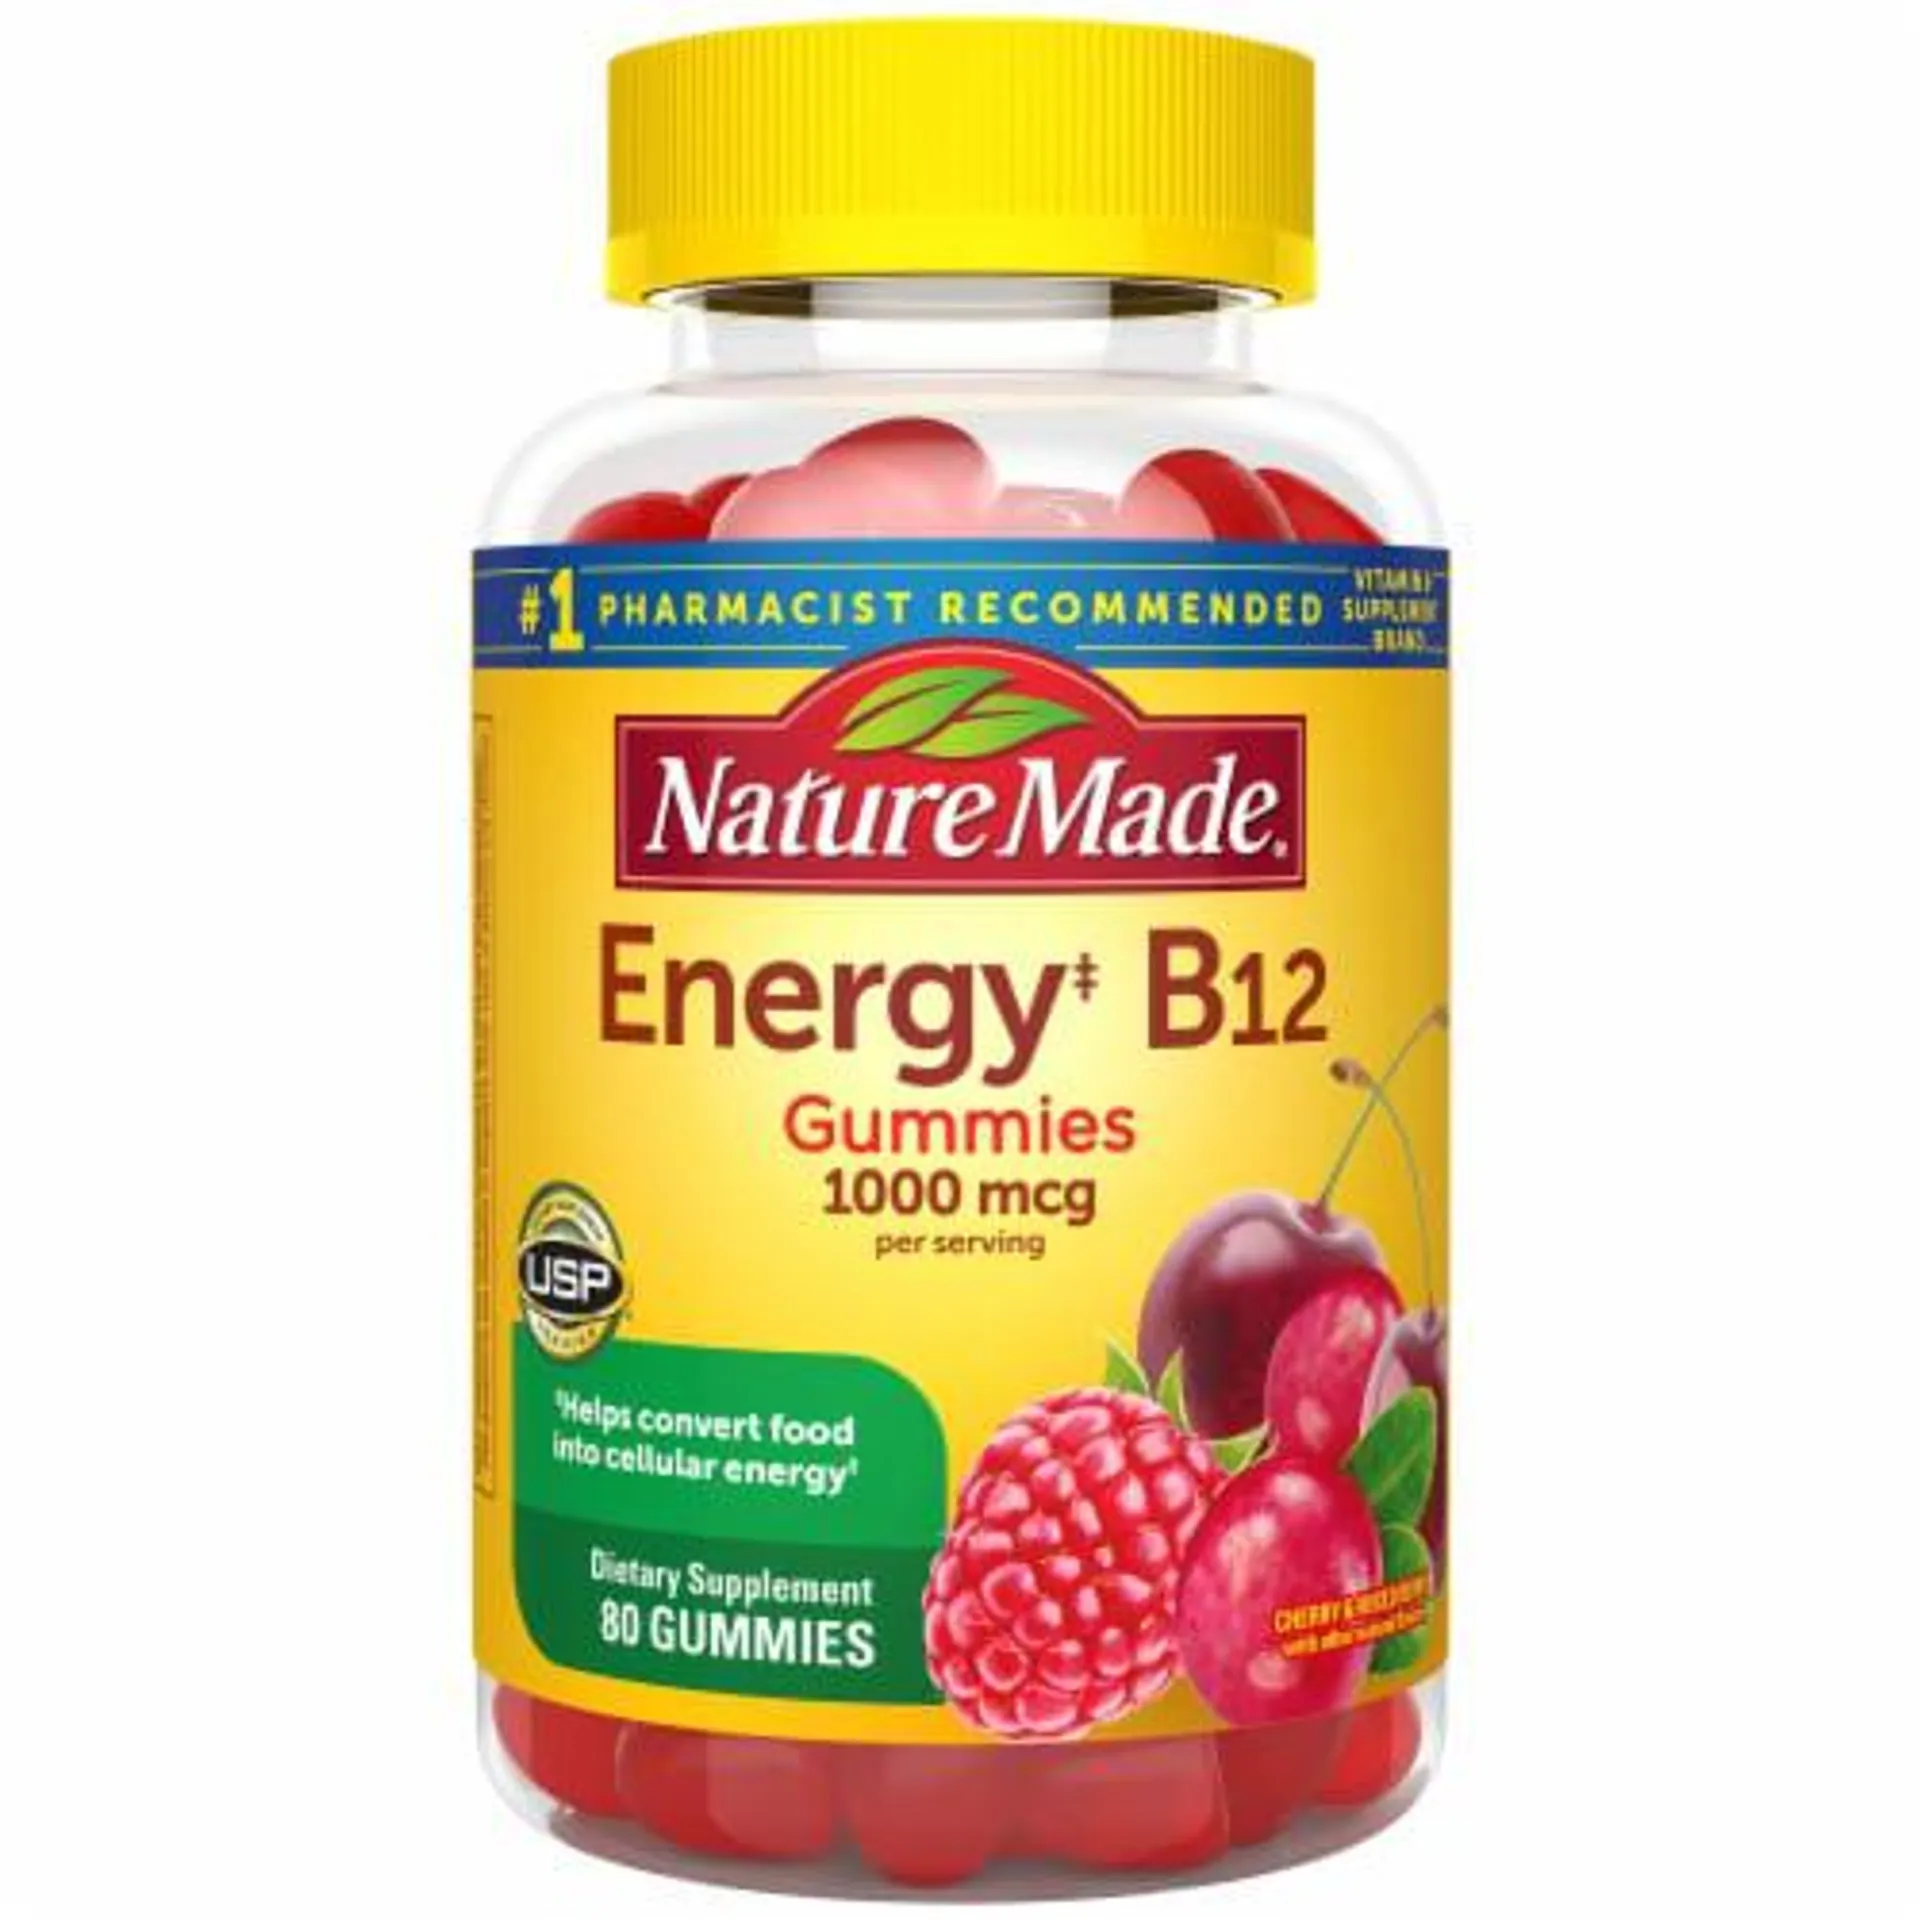 Nature Made® Energy B12 Cherry & Mixed Berries Gummies 1000mcg